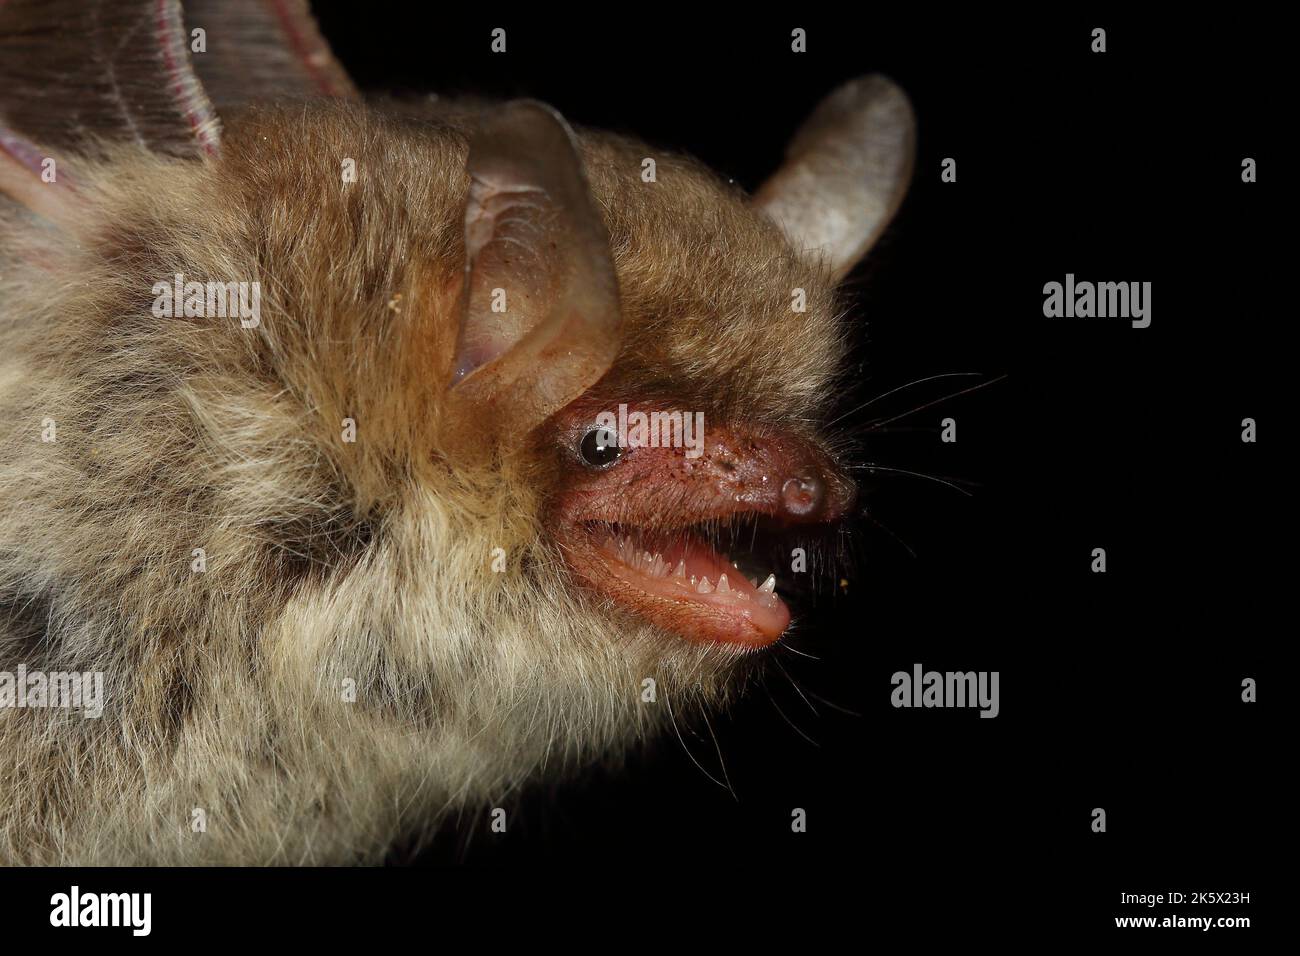 Portrait of Natterer's bat (Myotis nattereri) in a natural habitat Stock Photo